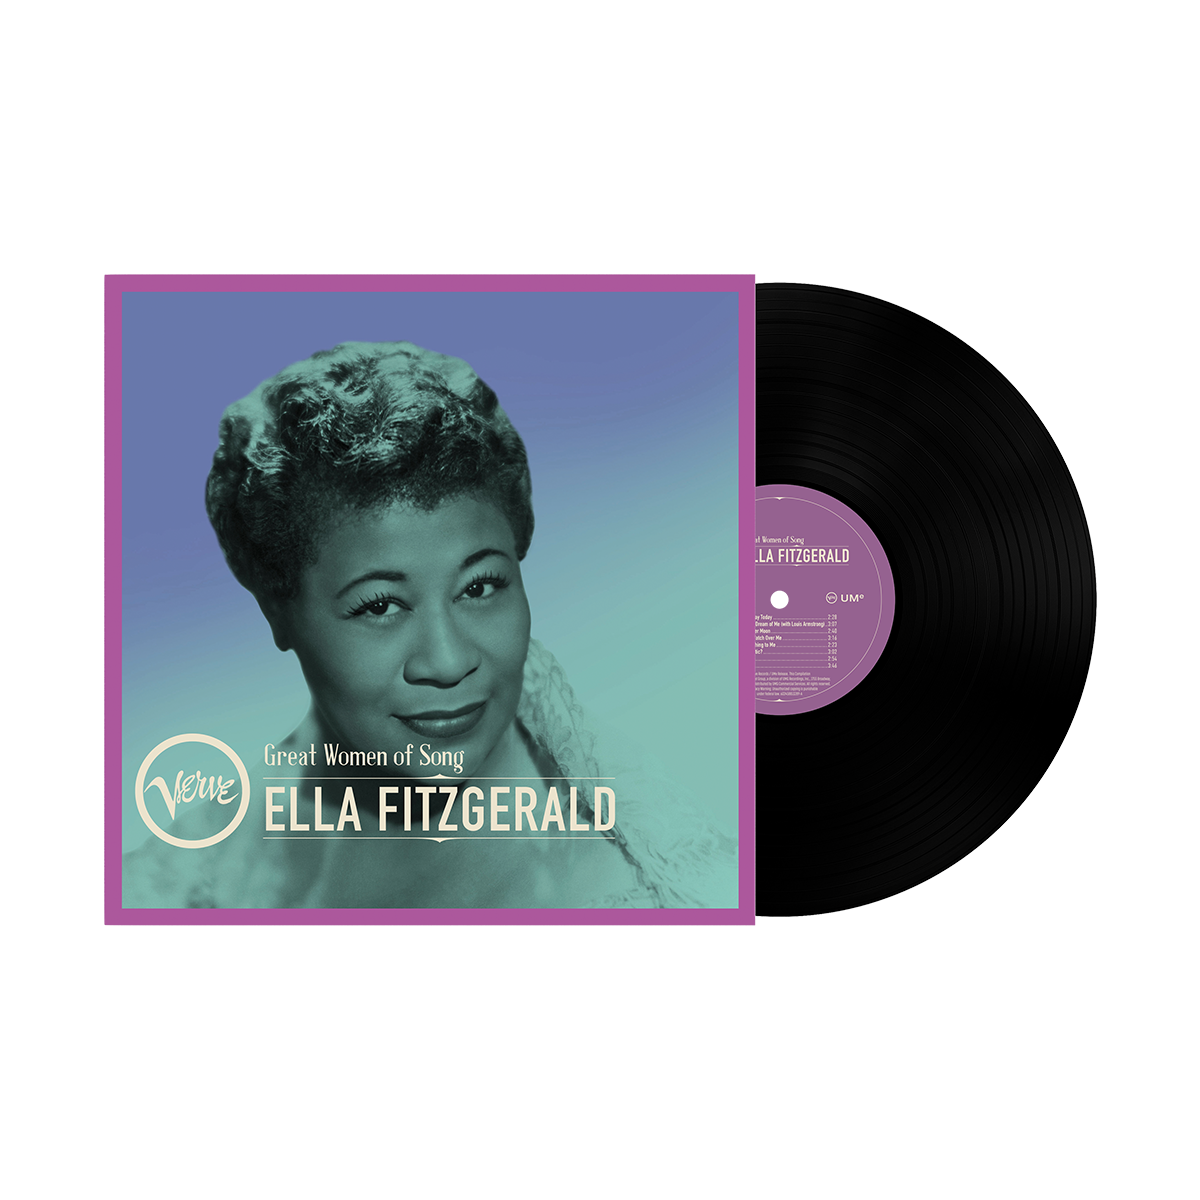 Ella Fitzgerald - Great Women Of Song - Ella Fitzgerald: Vinyl LP